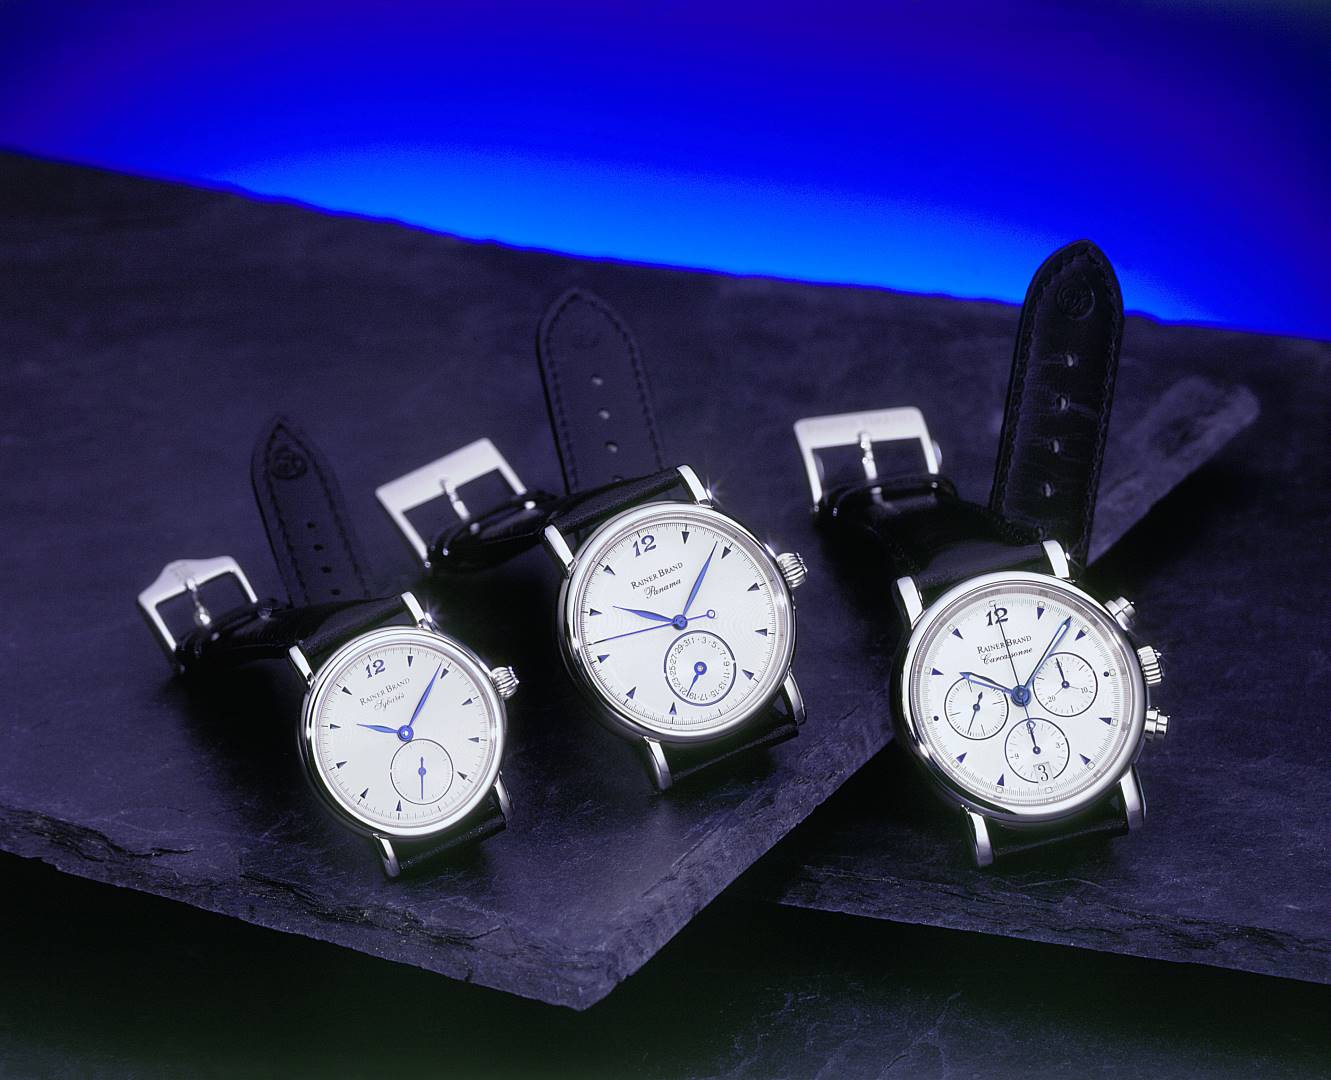 Retrospective • Rainer Brand hochwertiger mechanischer - Produktion Uhren